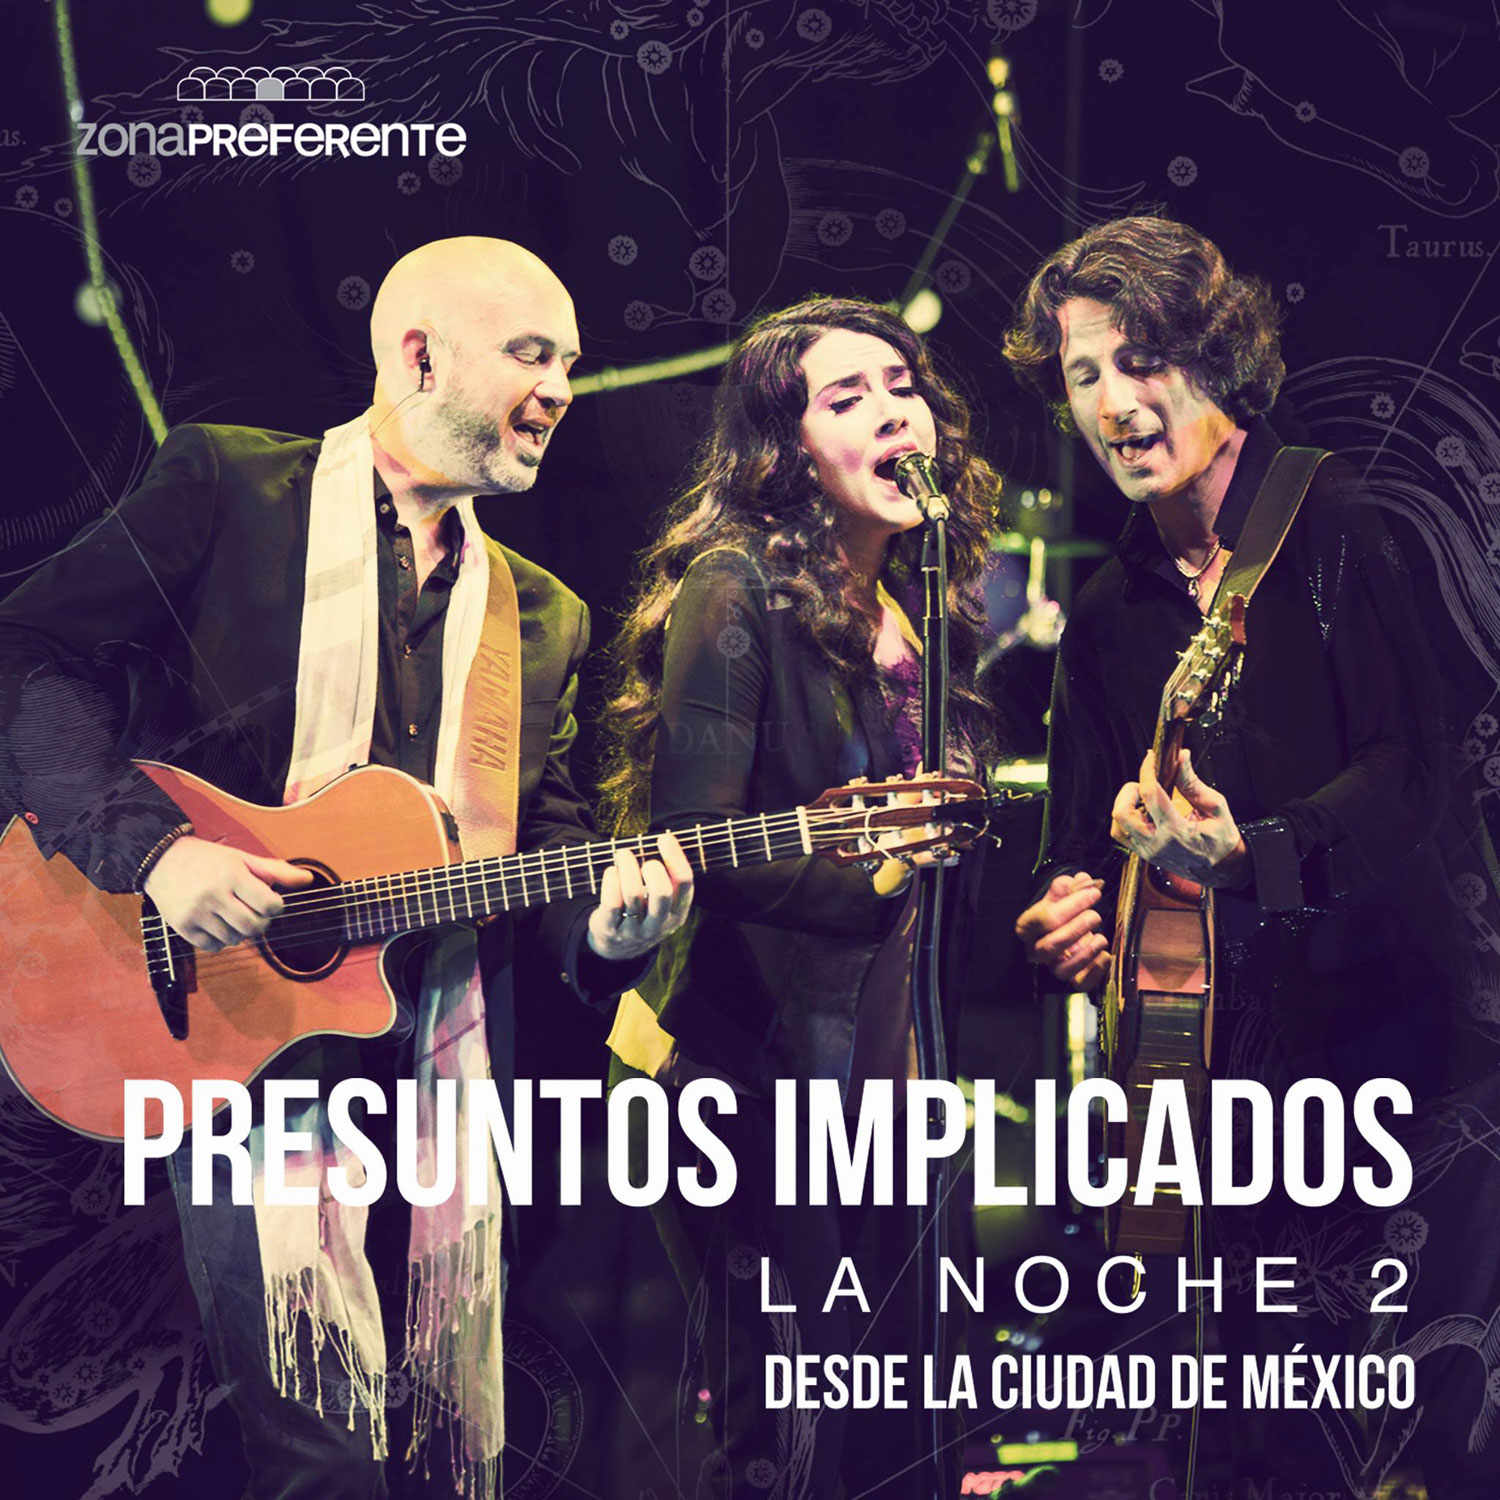 Presuntos Implicados: La Noche 2 desde la Ciudad de México, la portada del disco